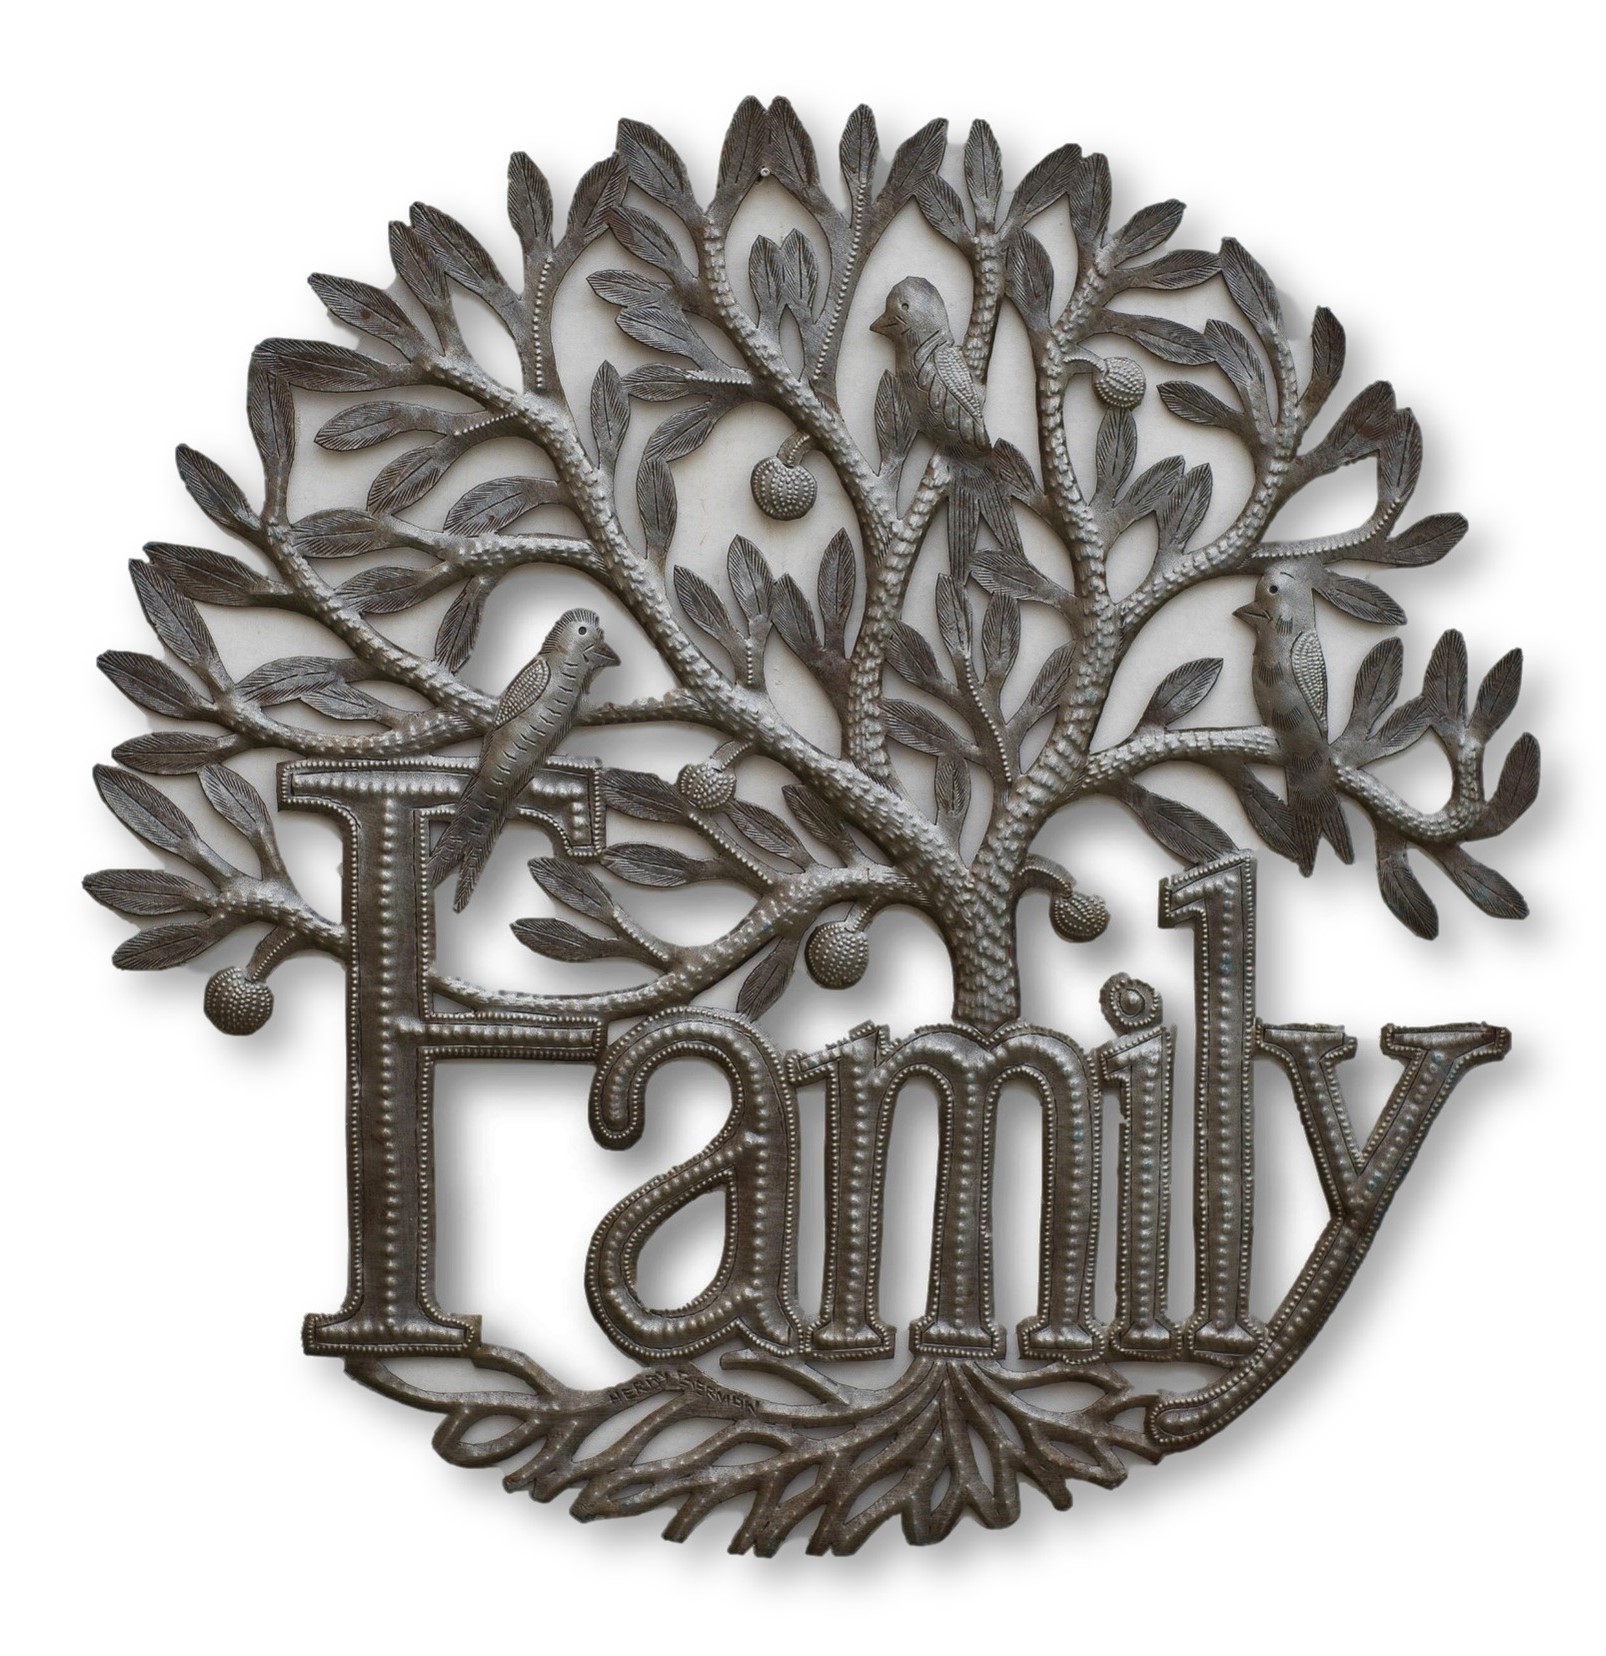 Family Tree of Life